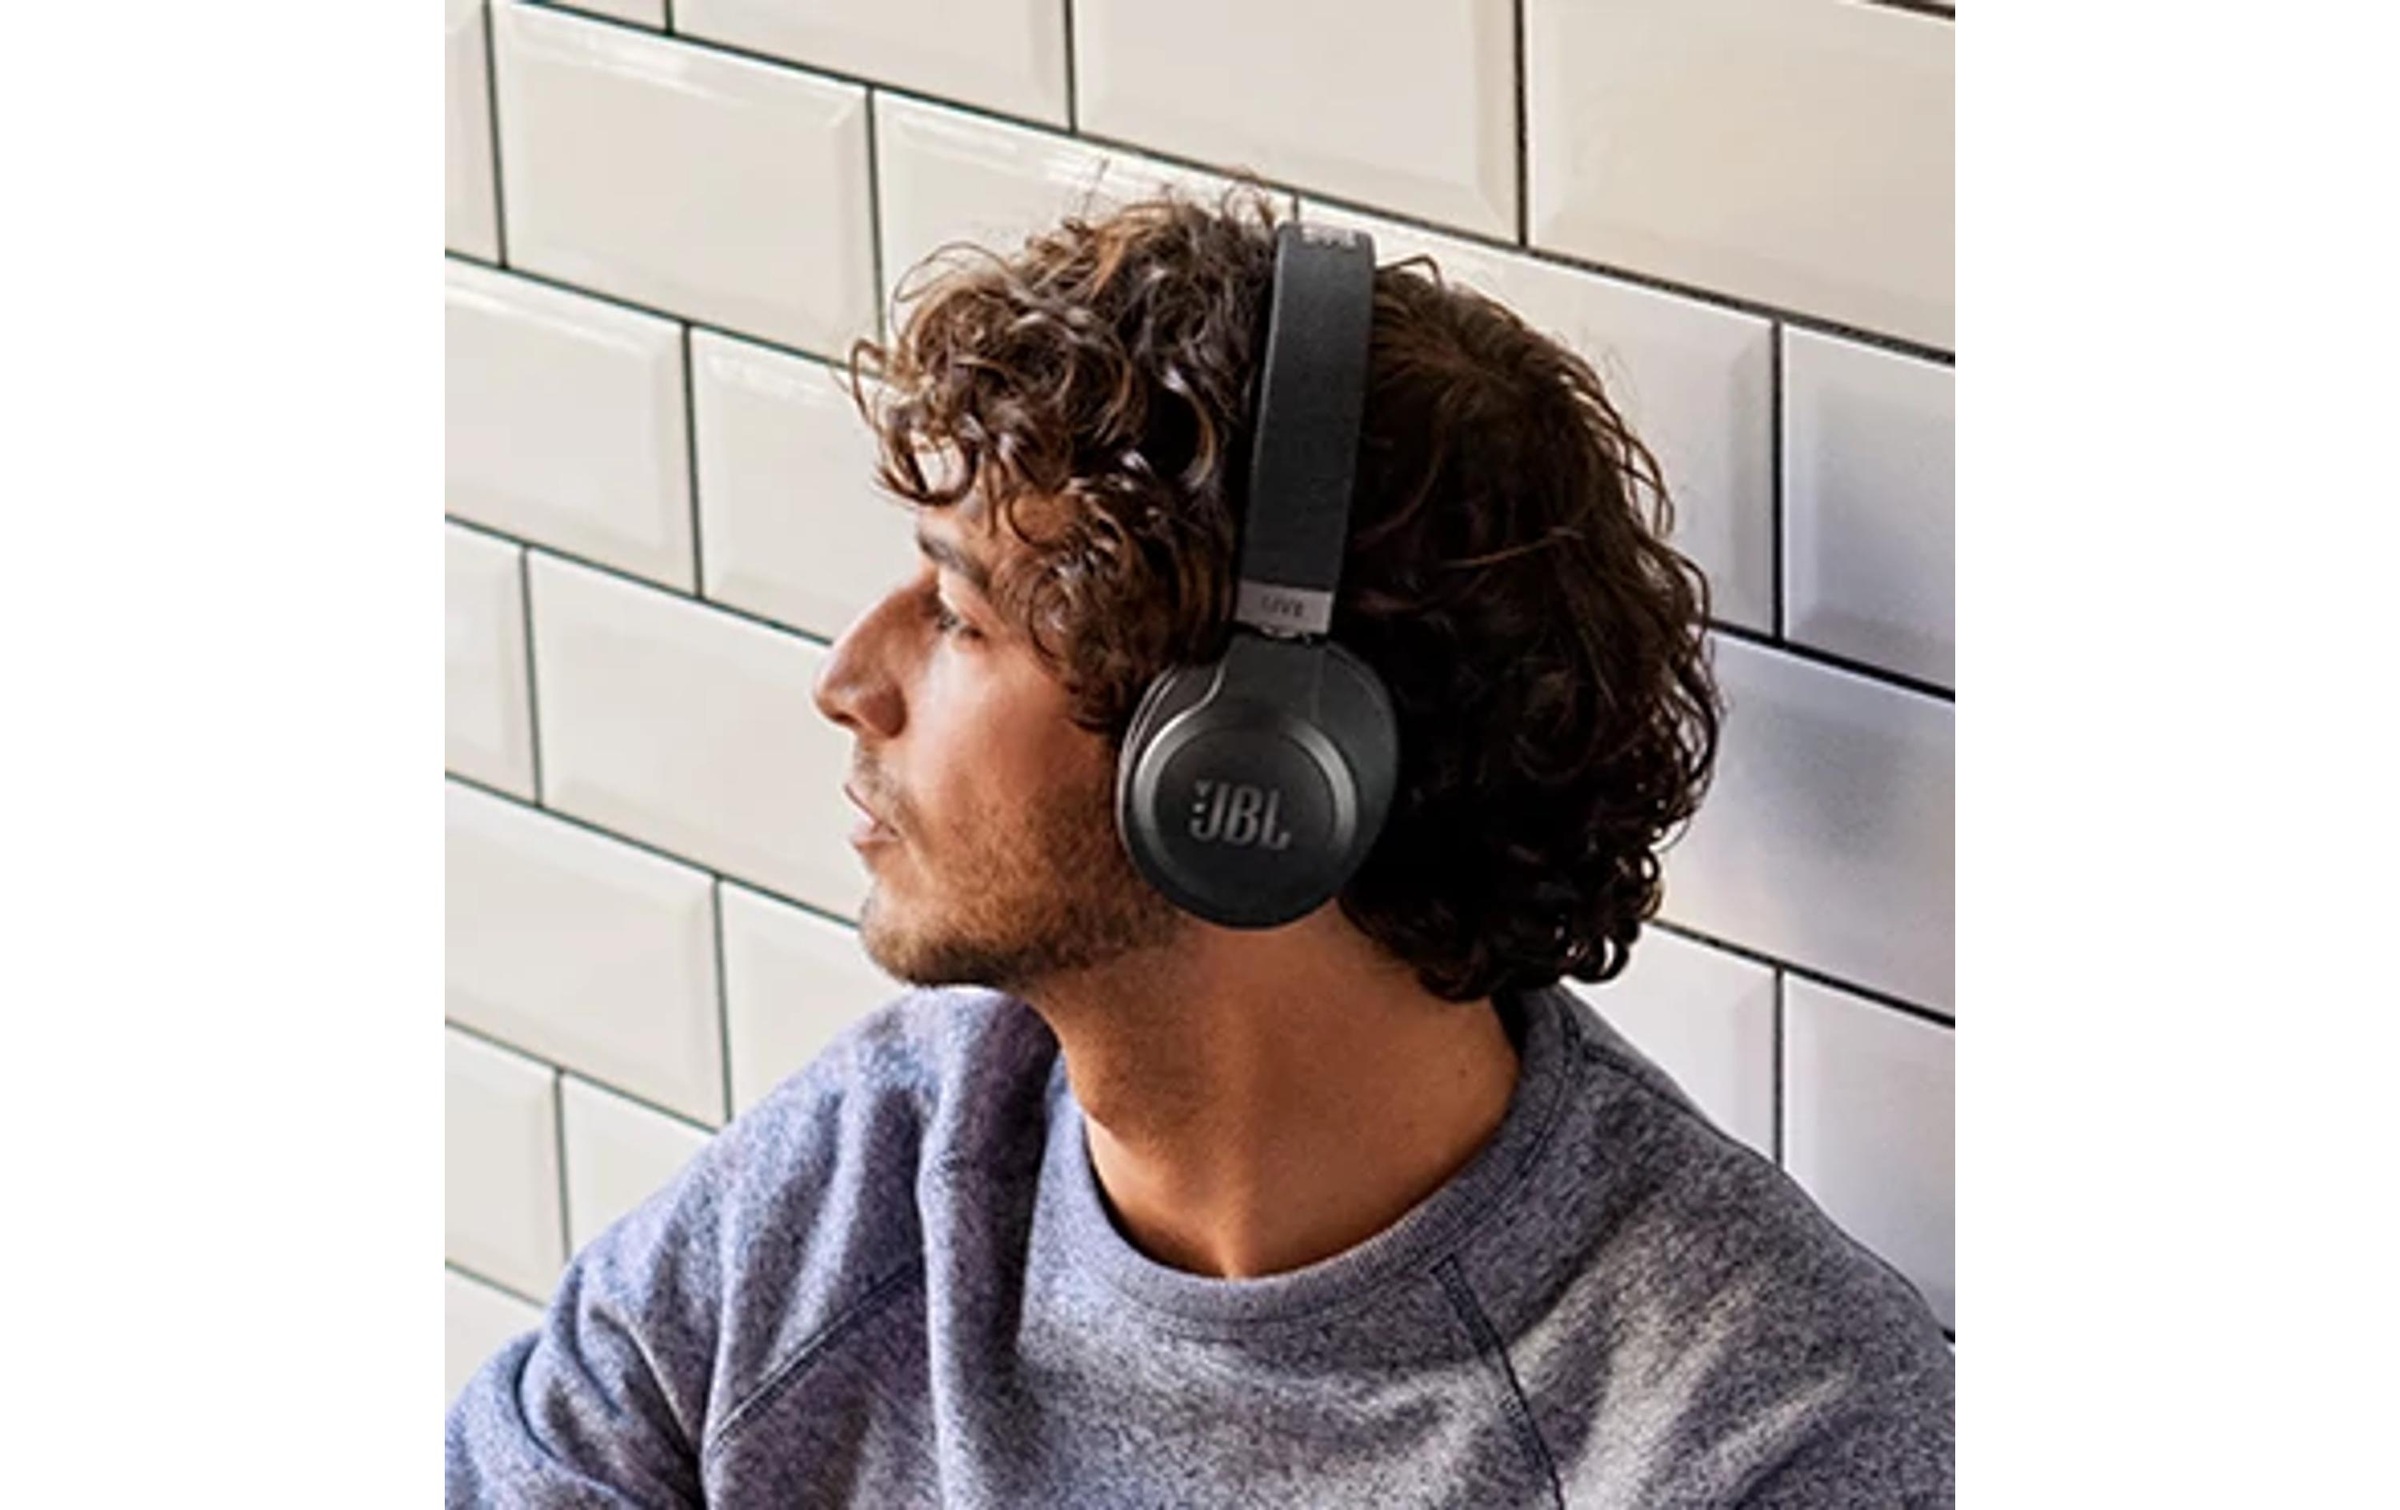 ➥ Jelmoli-Versand »JBL LIV« JBL jetzt Over-Ear-Kopfhörer | Over-Ear-Kopfhörer Wireless shoppen